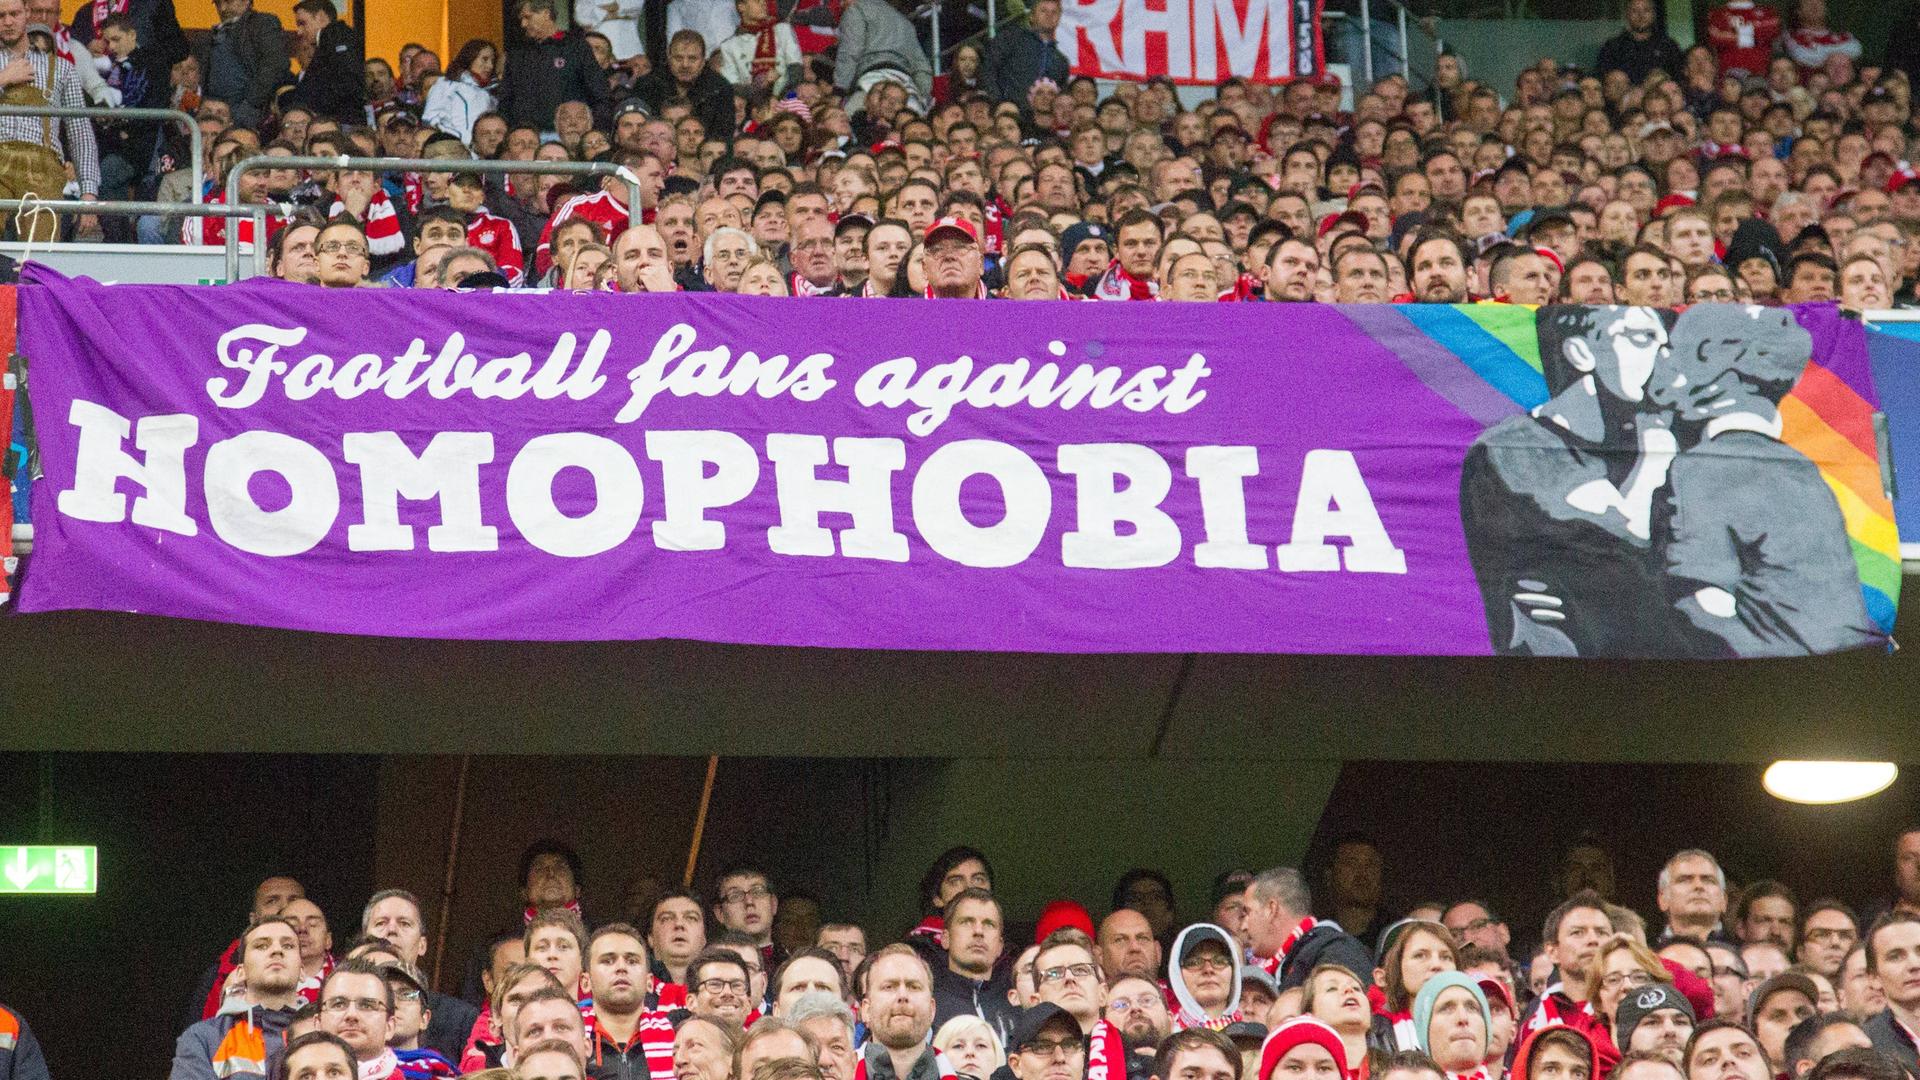 Das Bild zeigt einen Ausschnitt von Fans in einem Stadion, sie halten ein Banner hoch, auf dem zu lesen ist: Football fans against Homophobia.